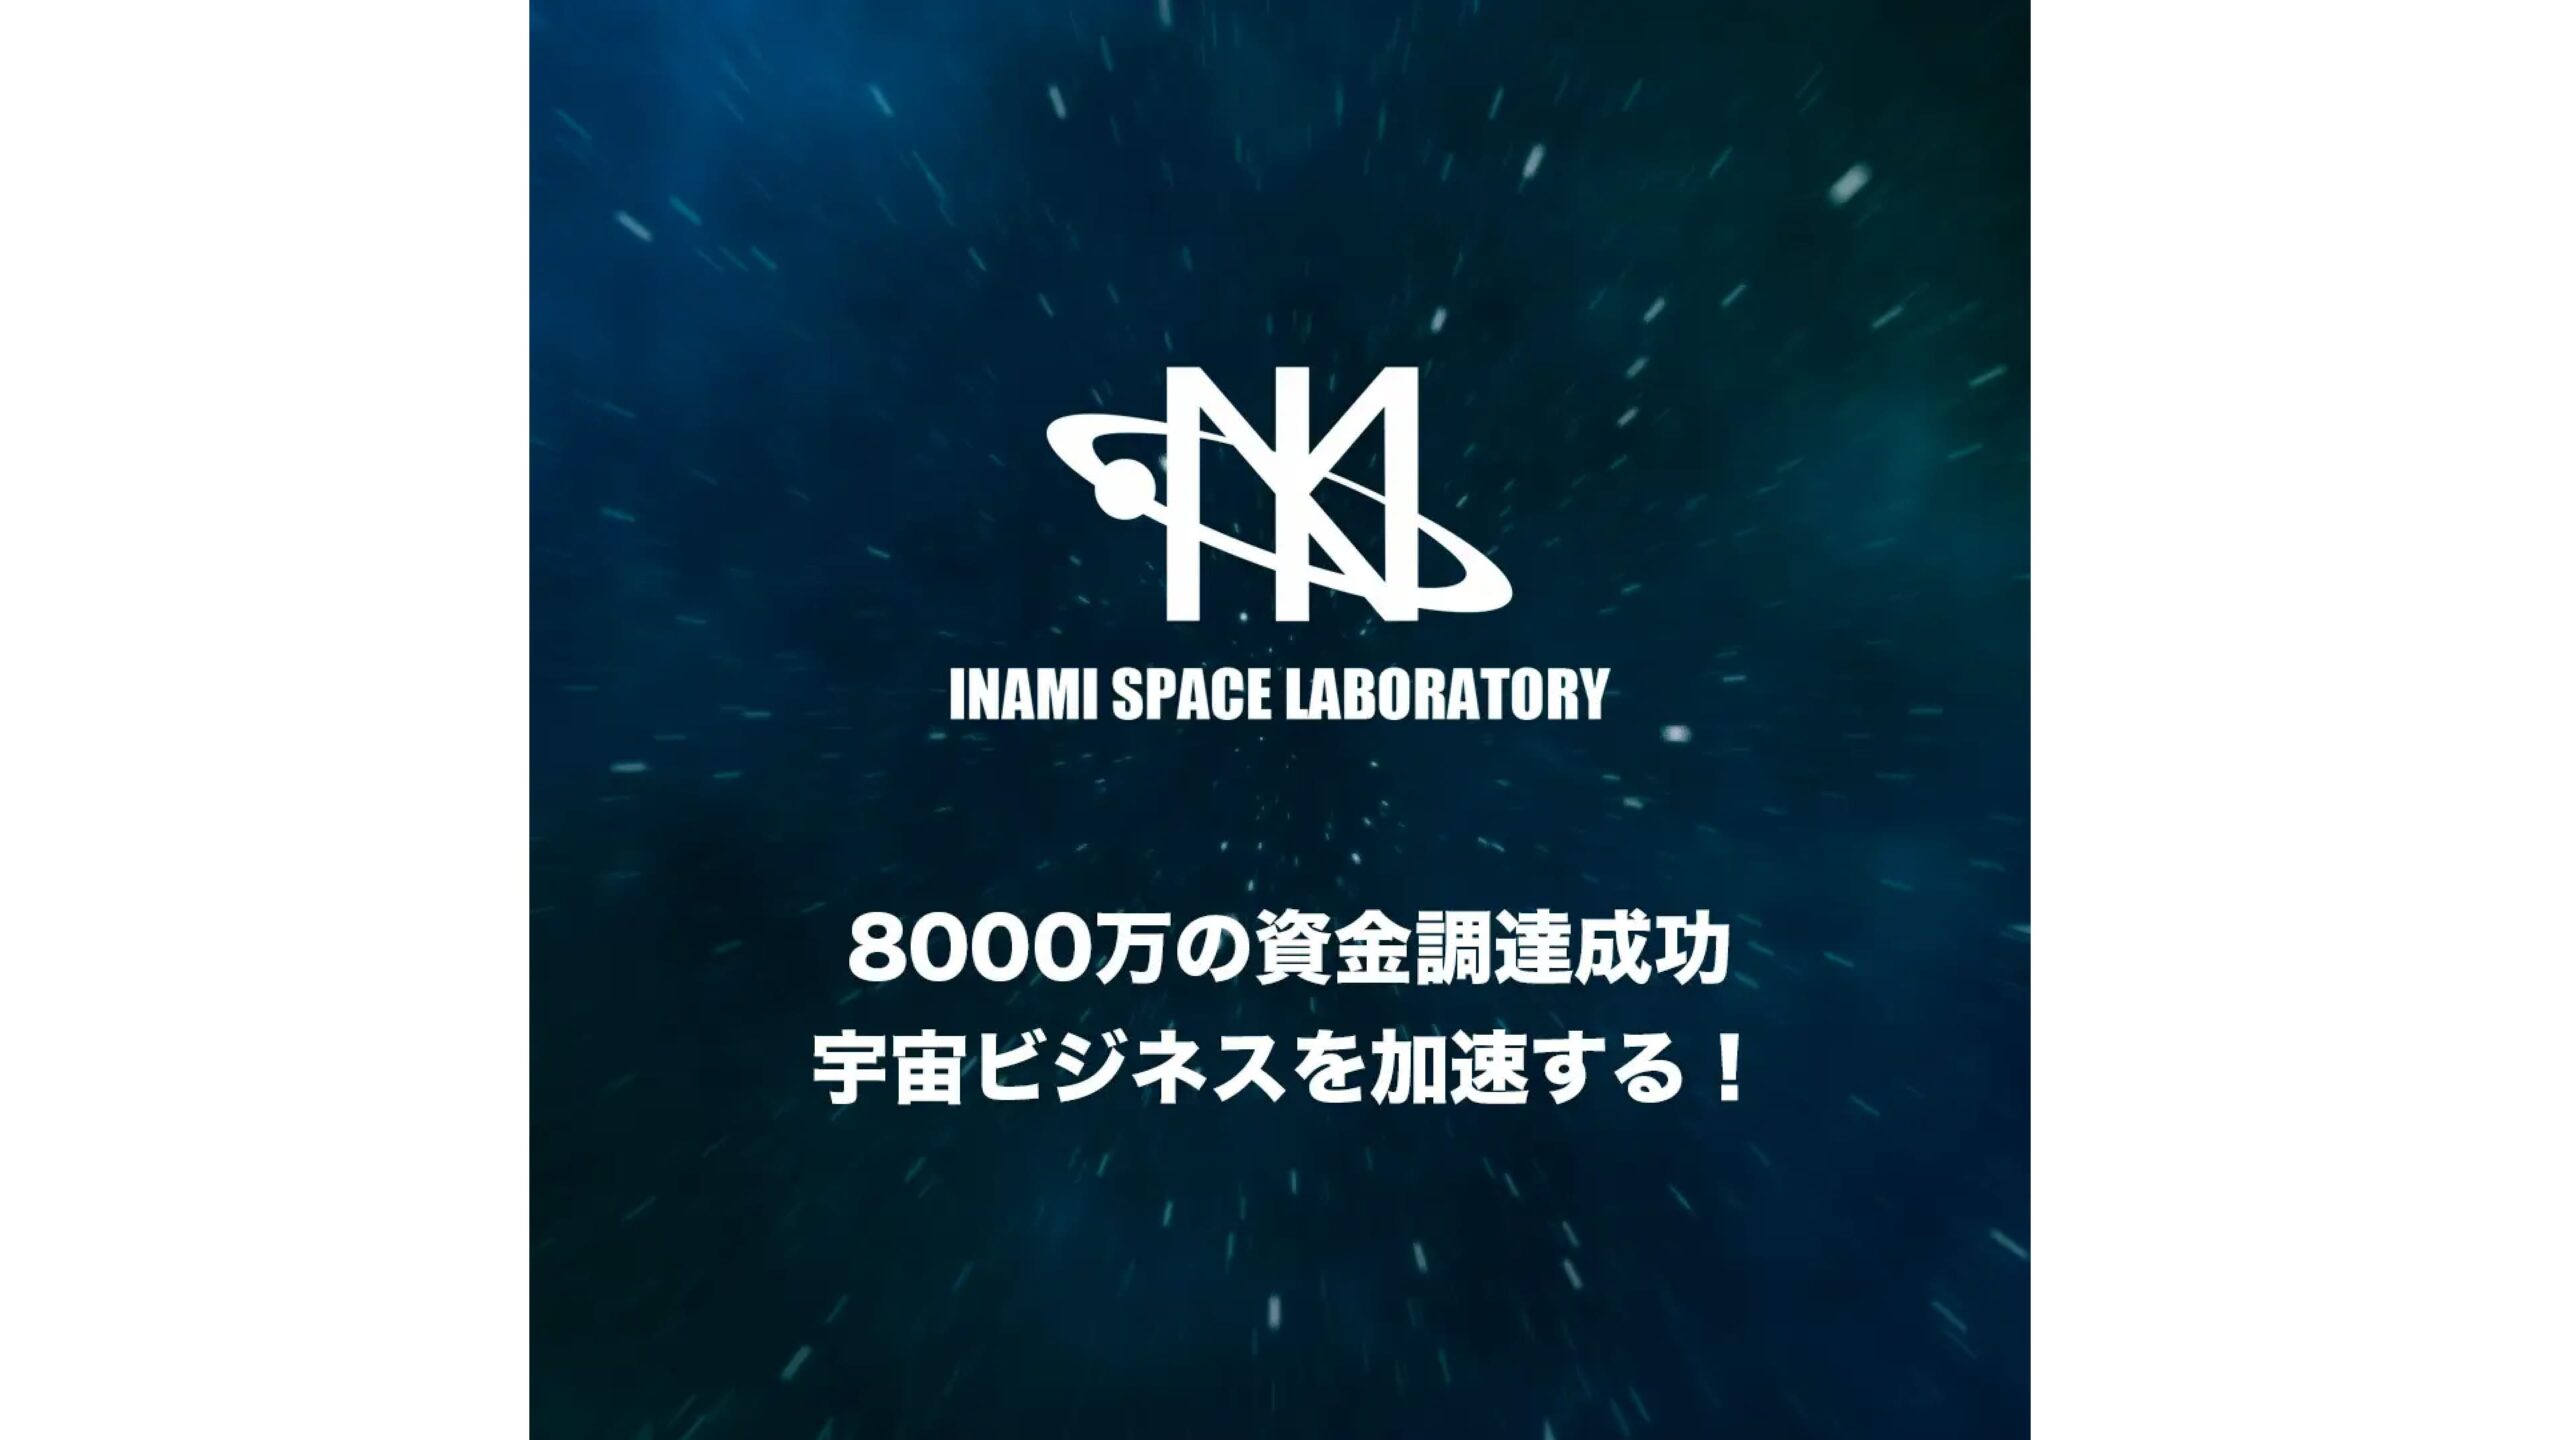 宇宙ビジネスを全面的にサポートするINAMI Space Laboratory株式会社、シードラウンドにて8000万円を調達——1期目から黒字化を達成